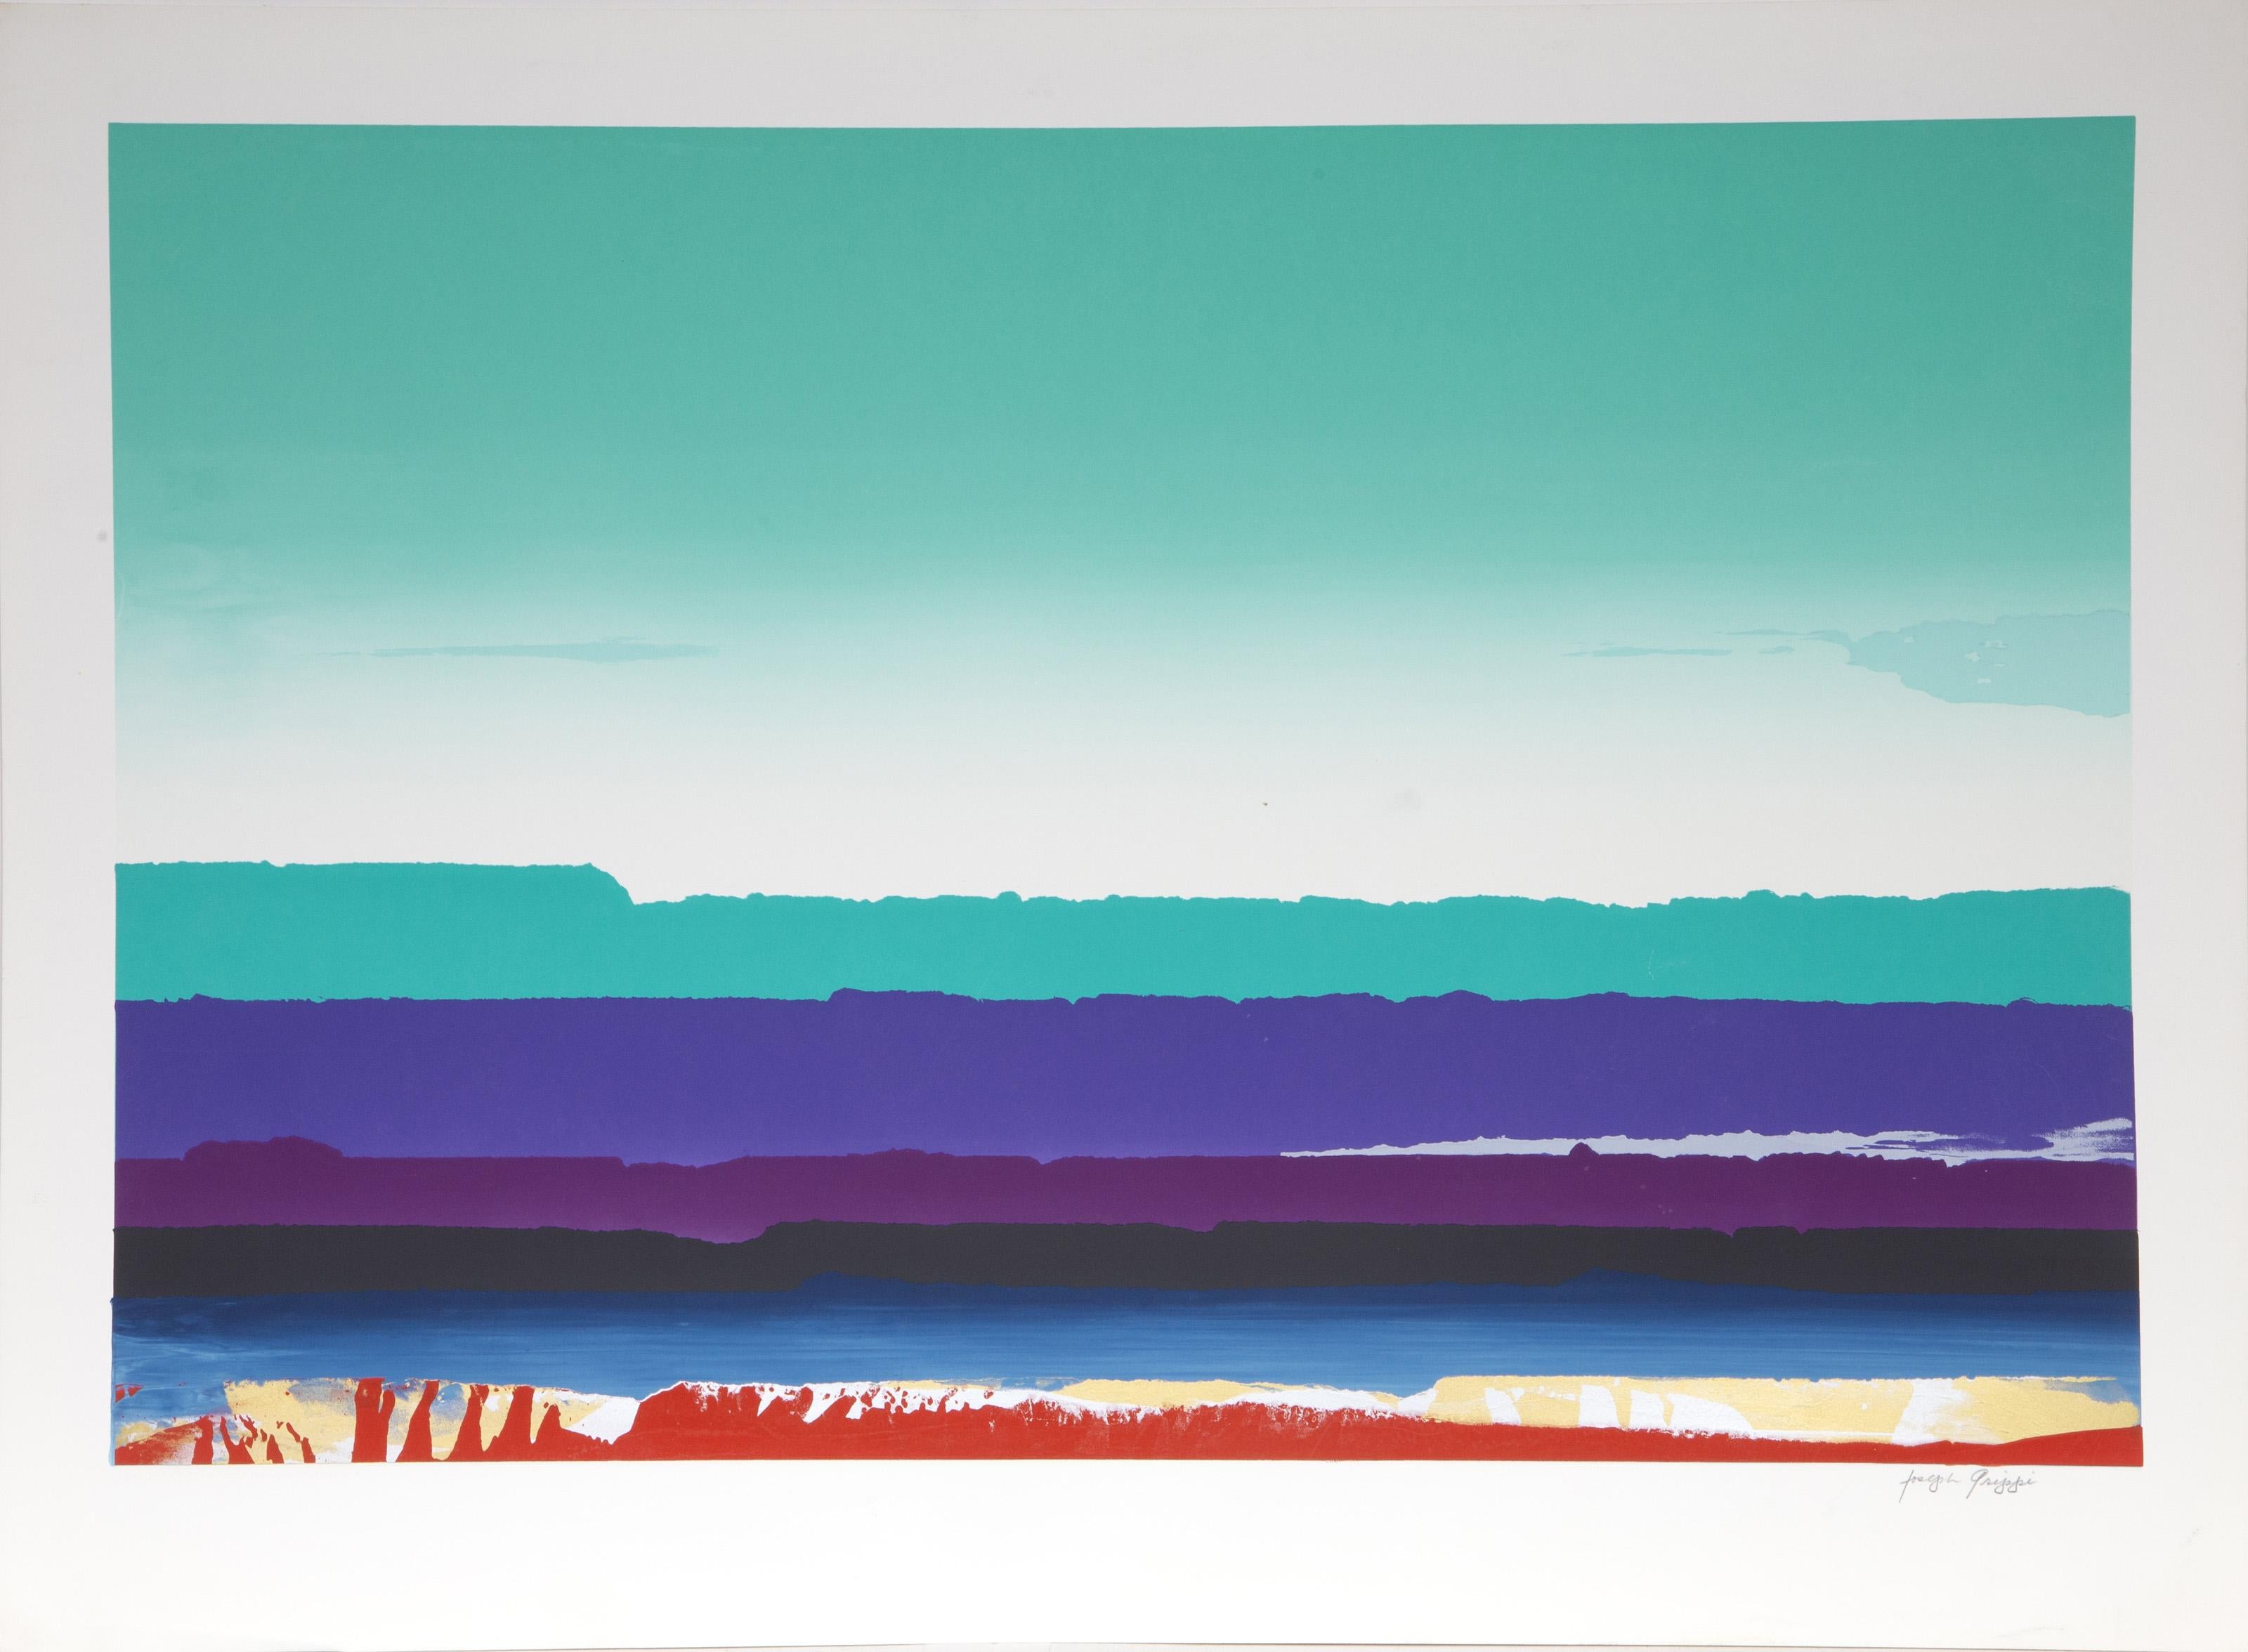 Paysage en vert, bleu et violet
Joseph Grippi, Américain (1924-2001)
Sérigraphie, signée au crayon
Taille de l'image : 20 x 30 pouces
Taille : 24.5 x 33.25 in. (62.23 x 84.46 cm)